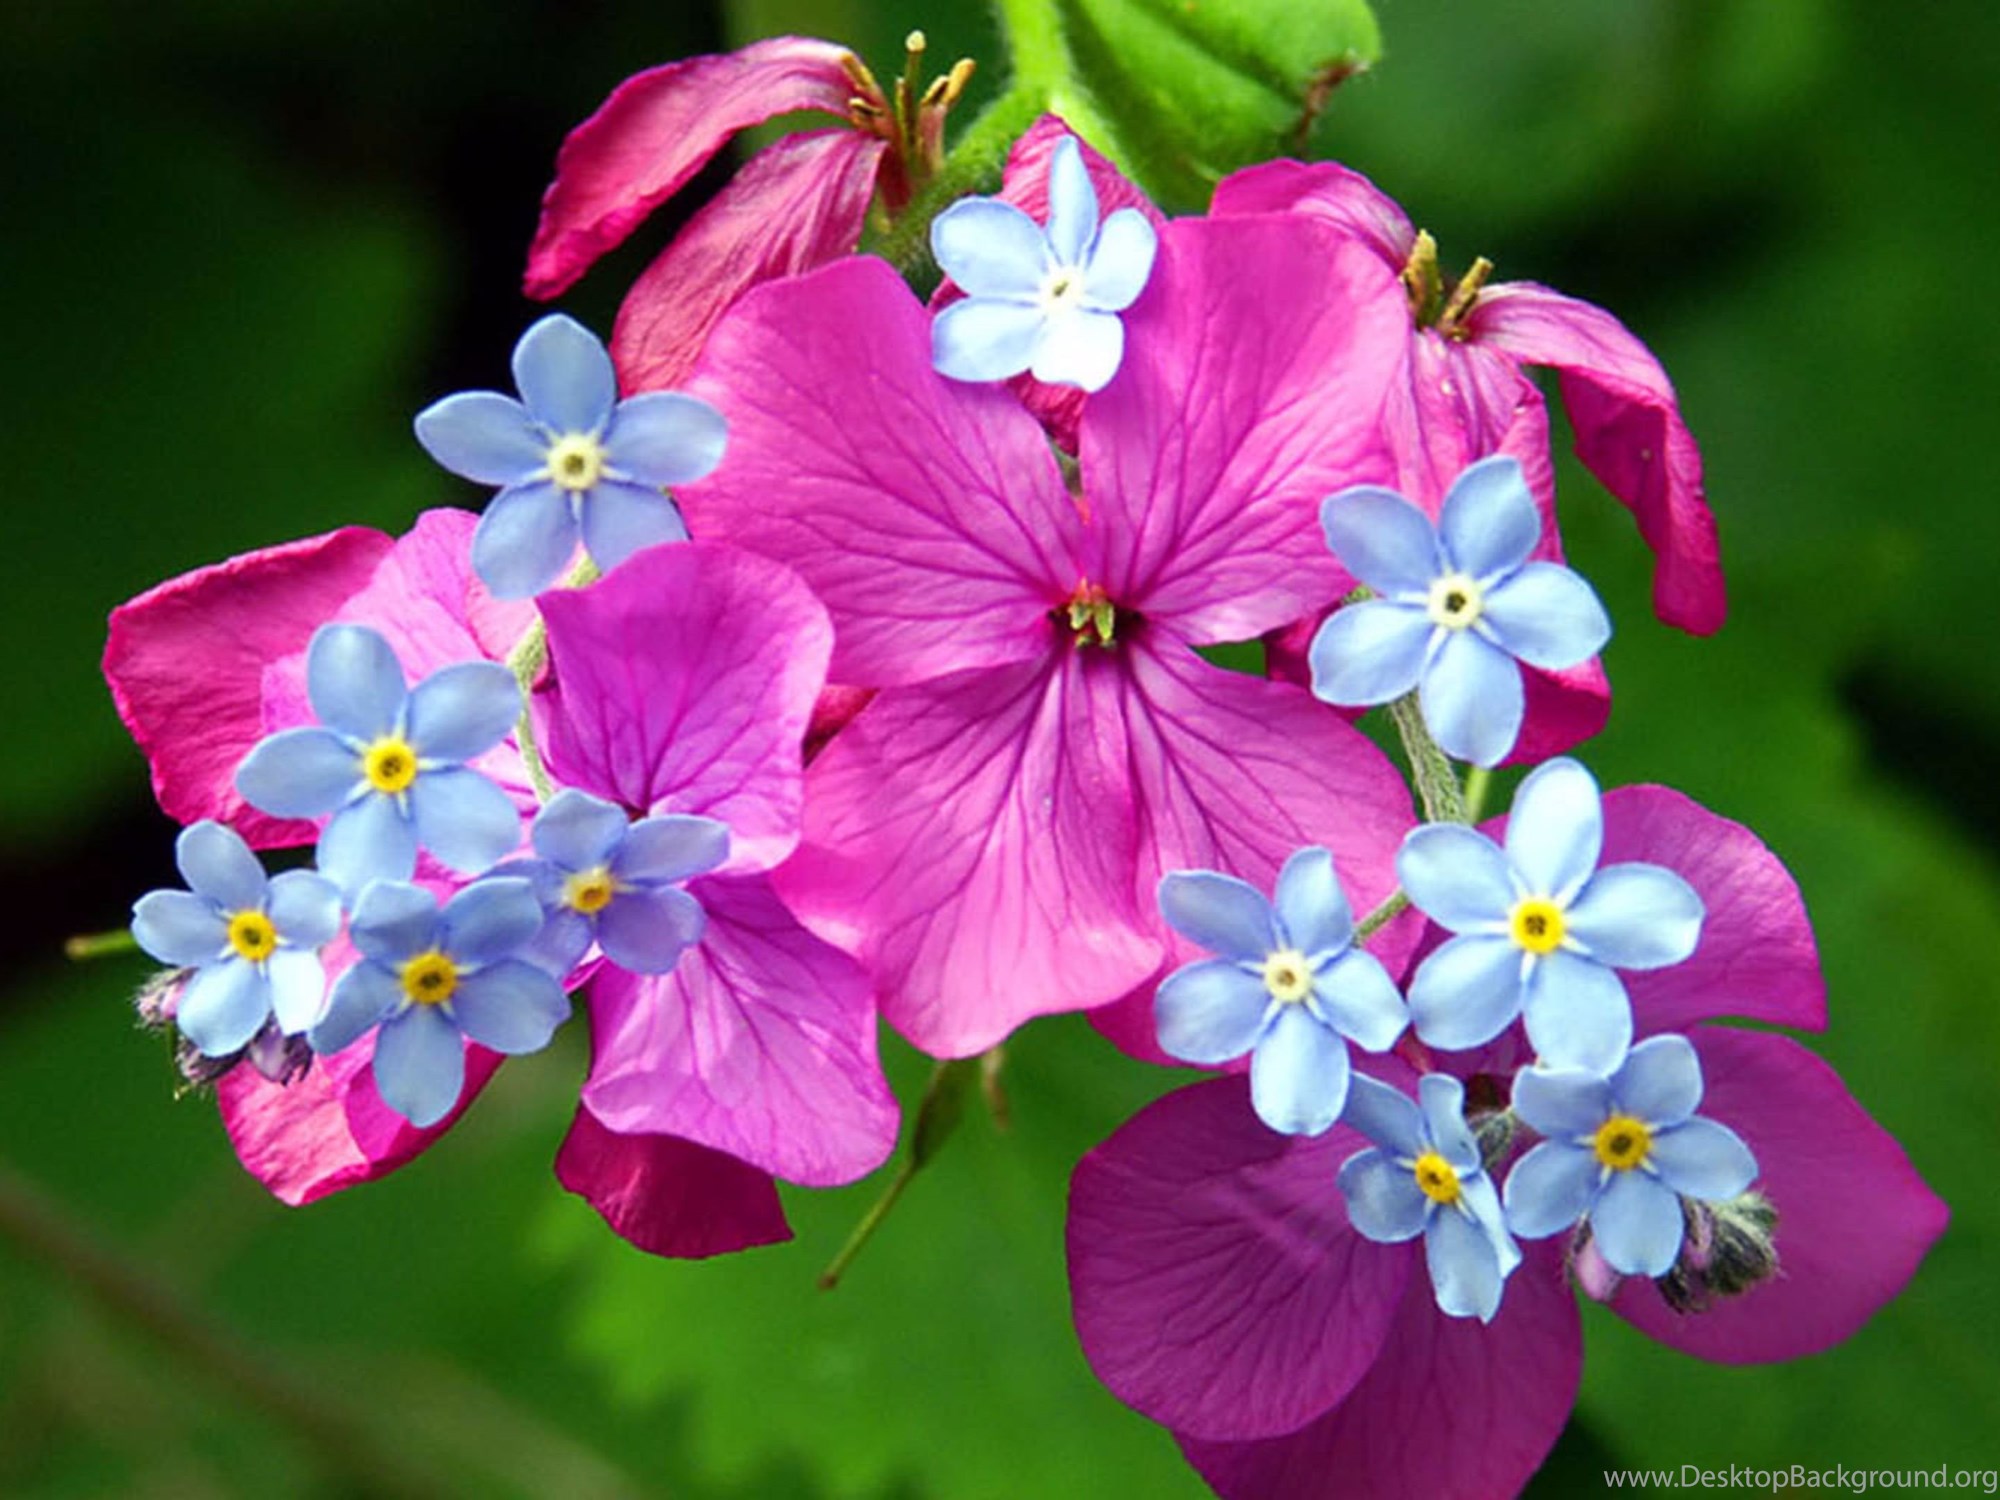 Gpo flowers. Цветочки. Красивые растения. Красивые цветы. Красивые цветочки.